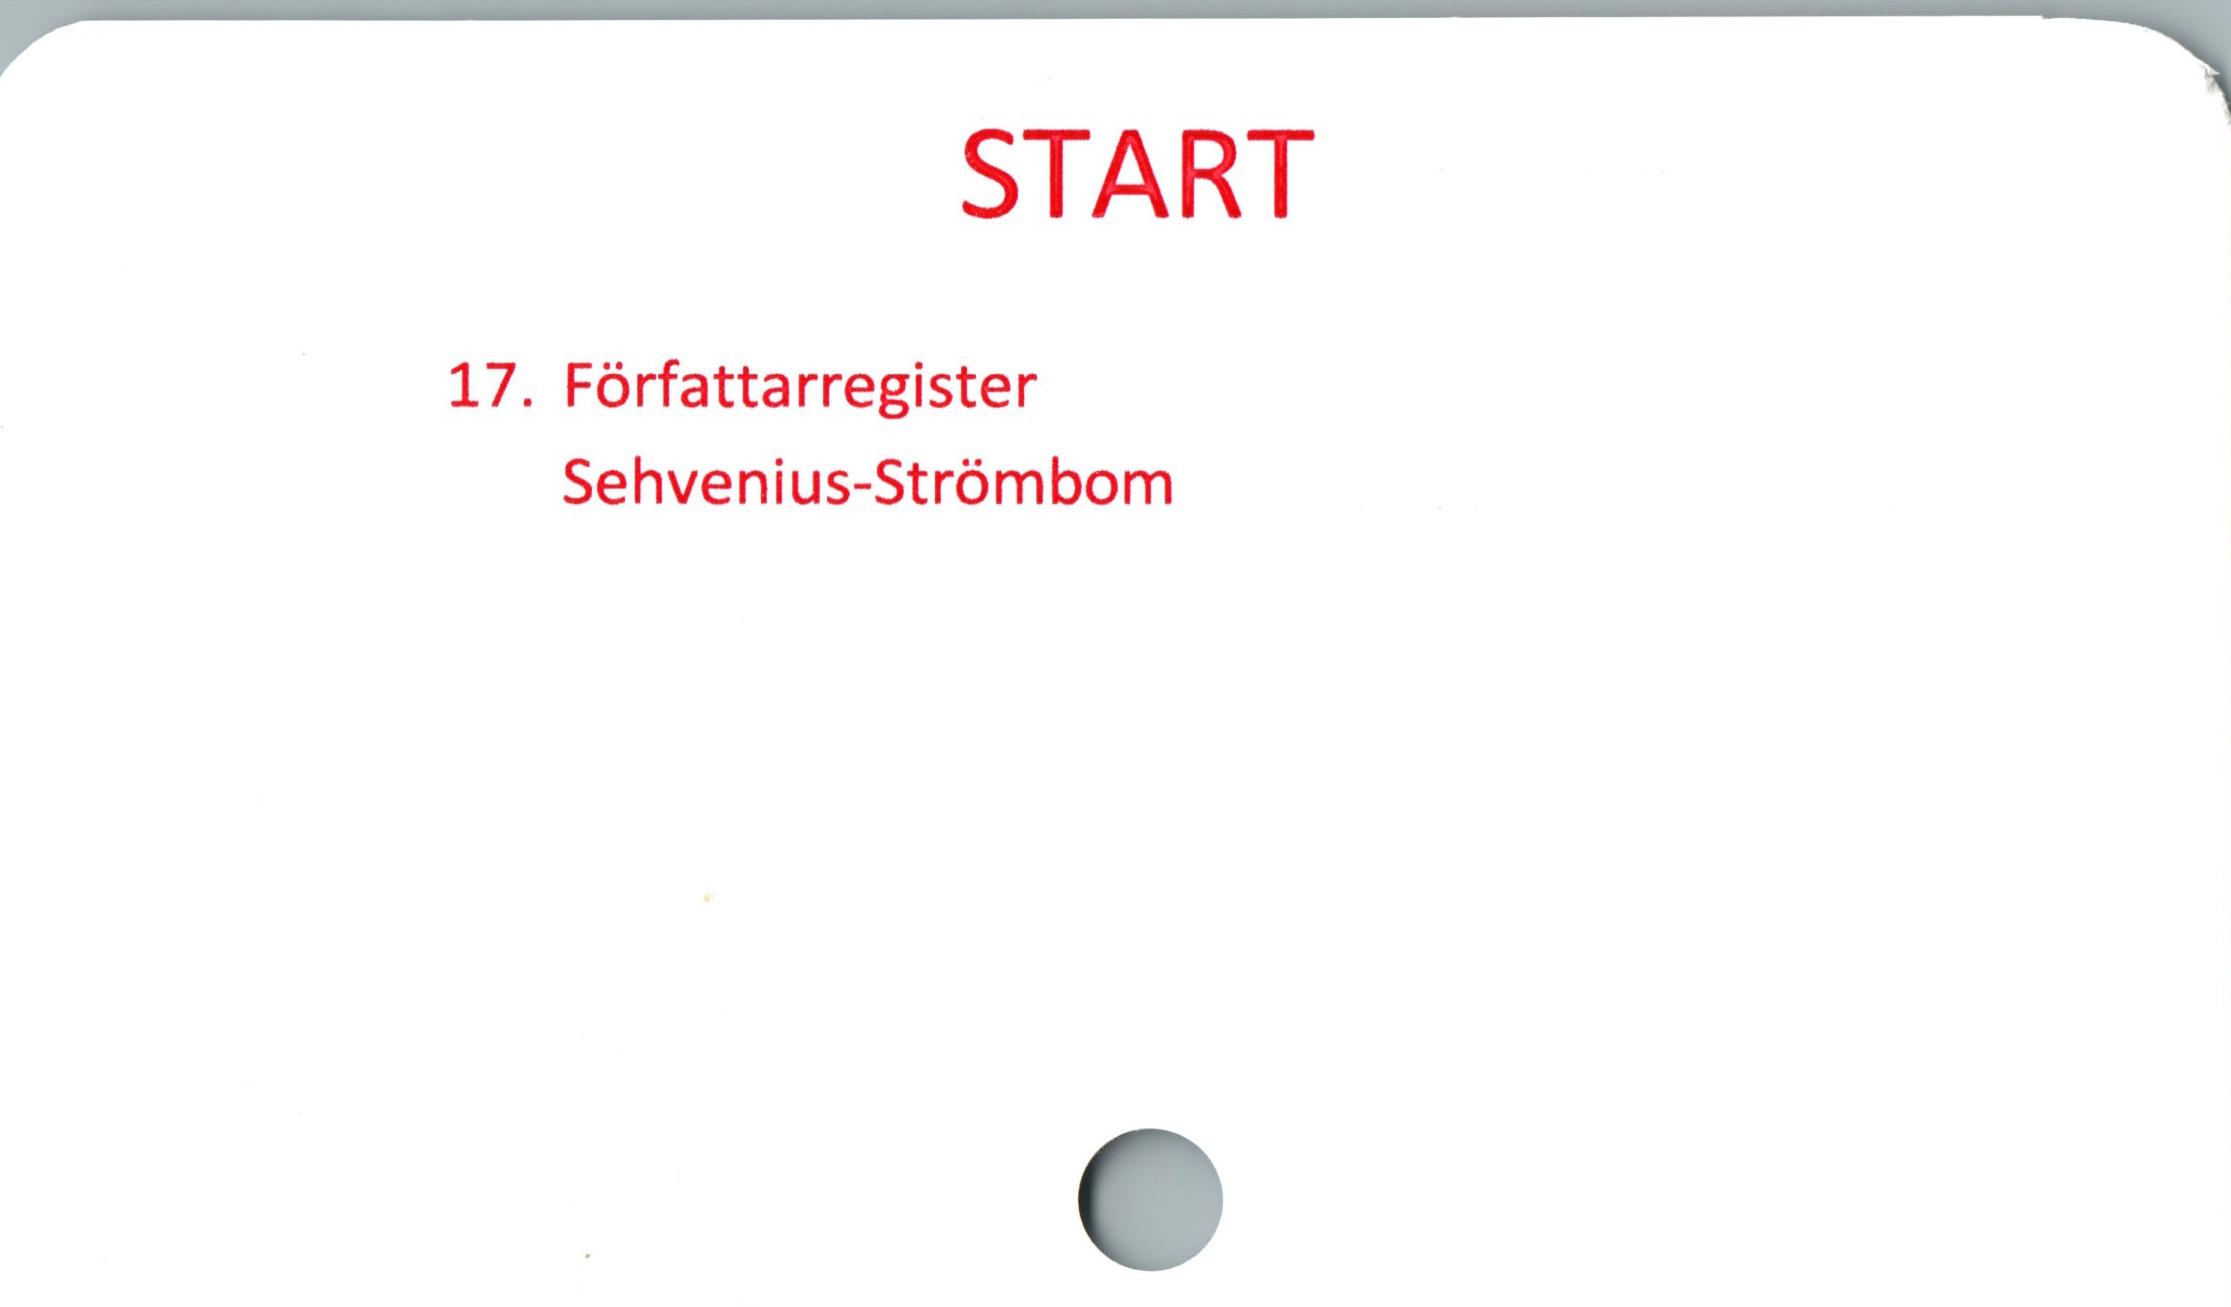  ﻿START

17. Författarregister
Sehvenius-Strömbom